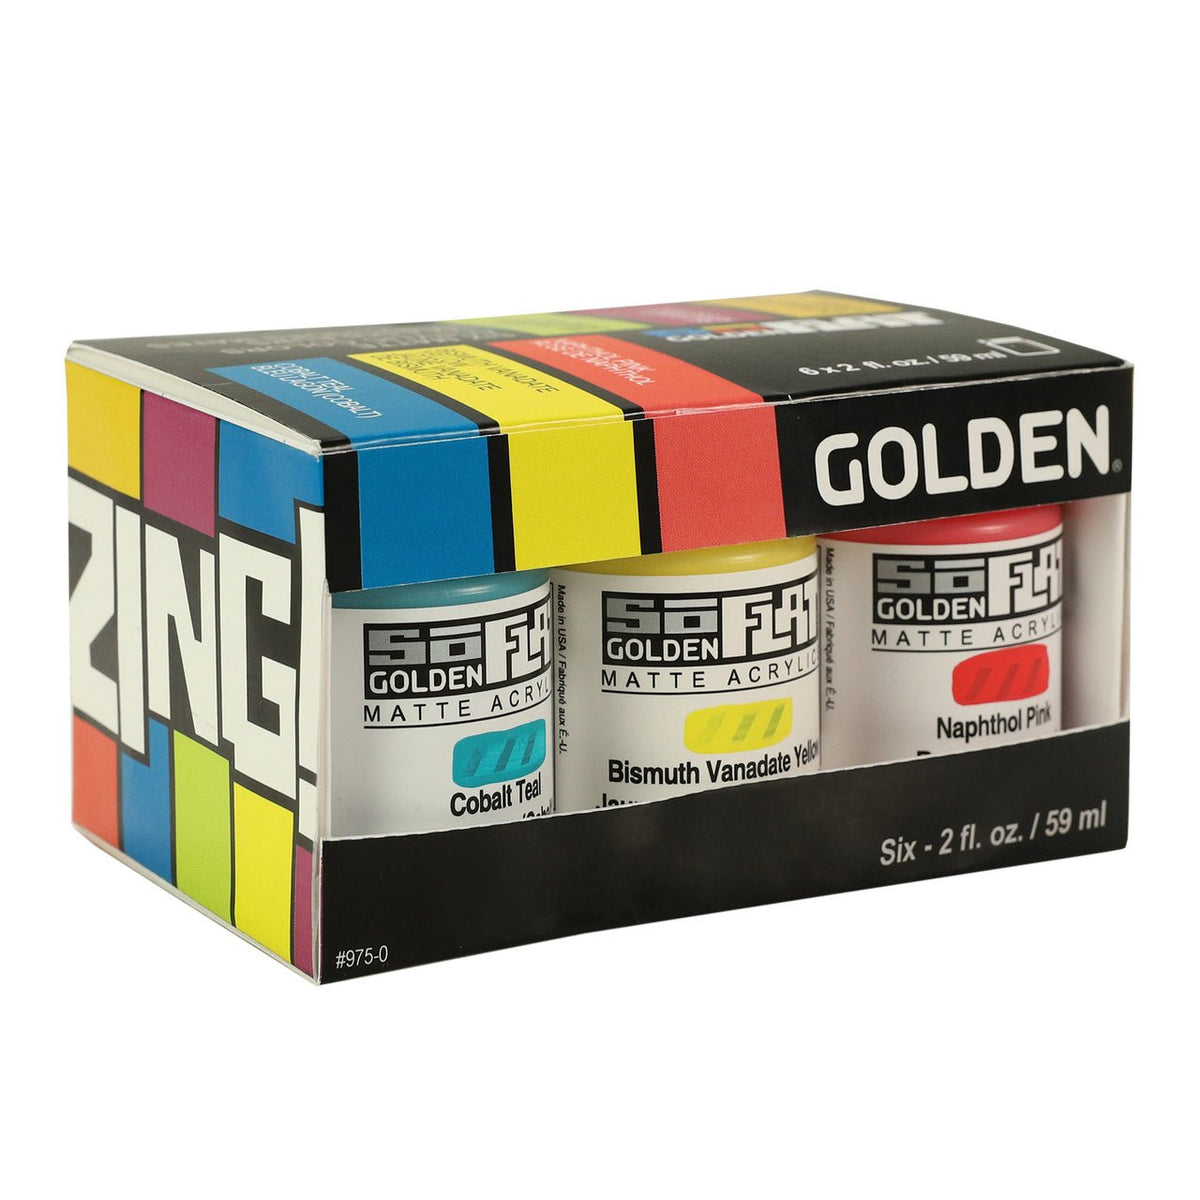 Golden SoFlat Matte Acrylic Paints - 6 Color Zing Set - merriartist.com